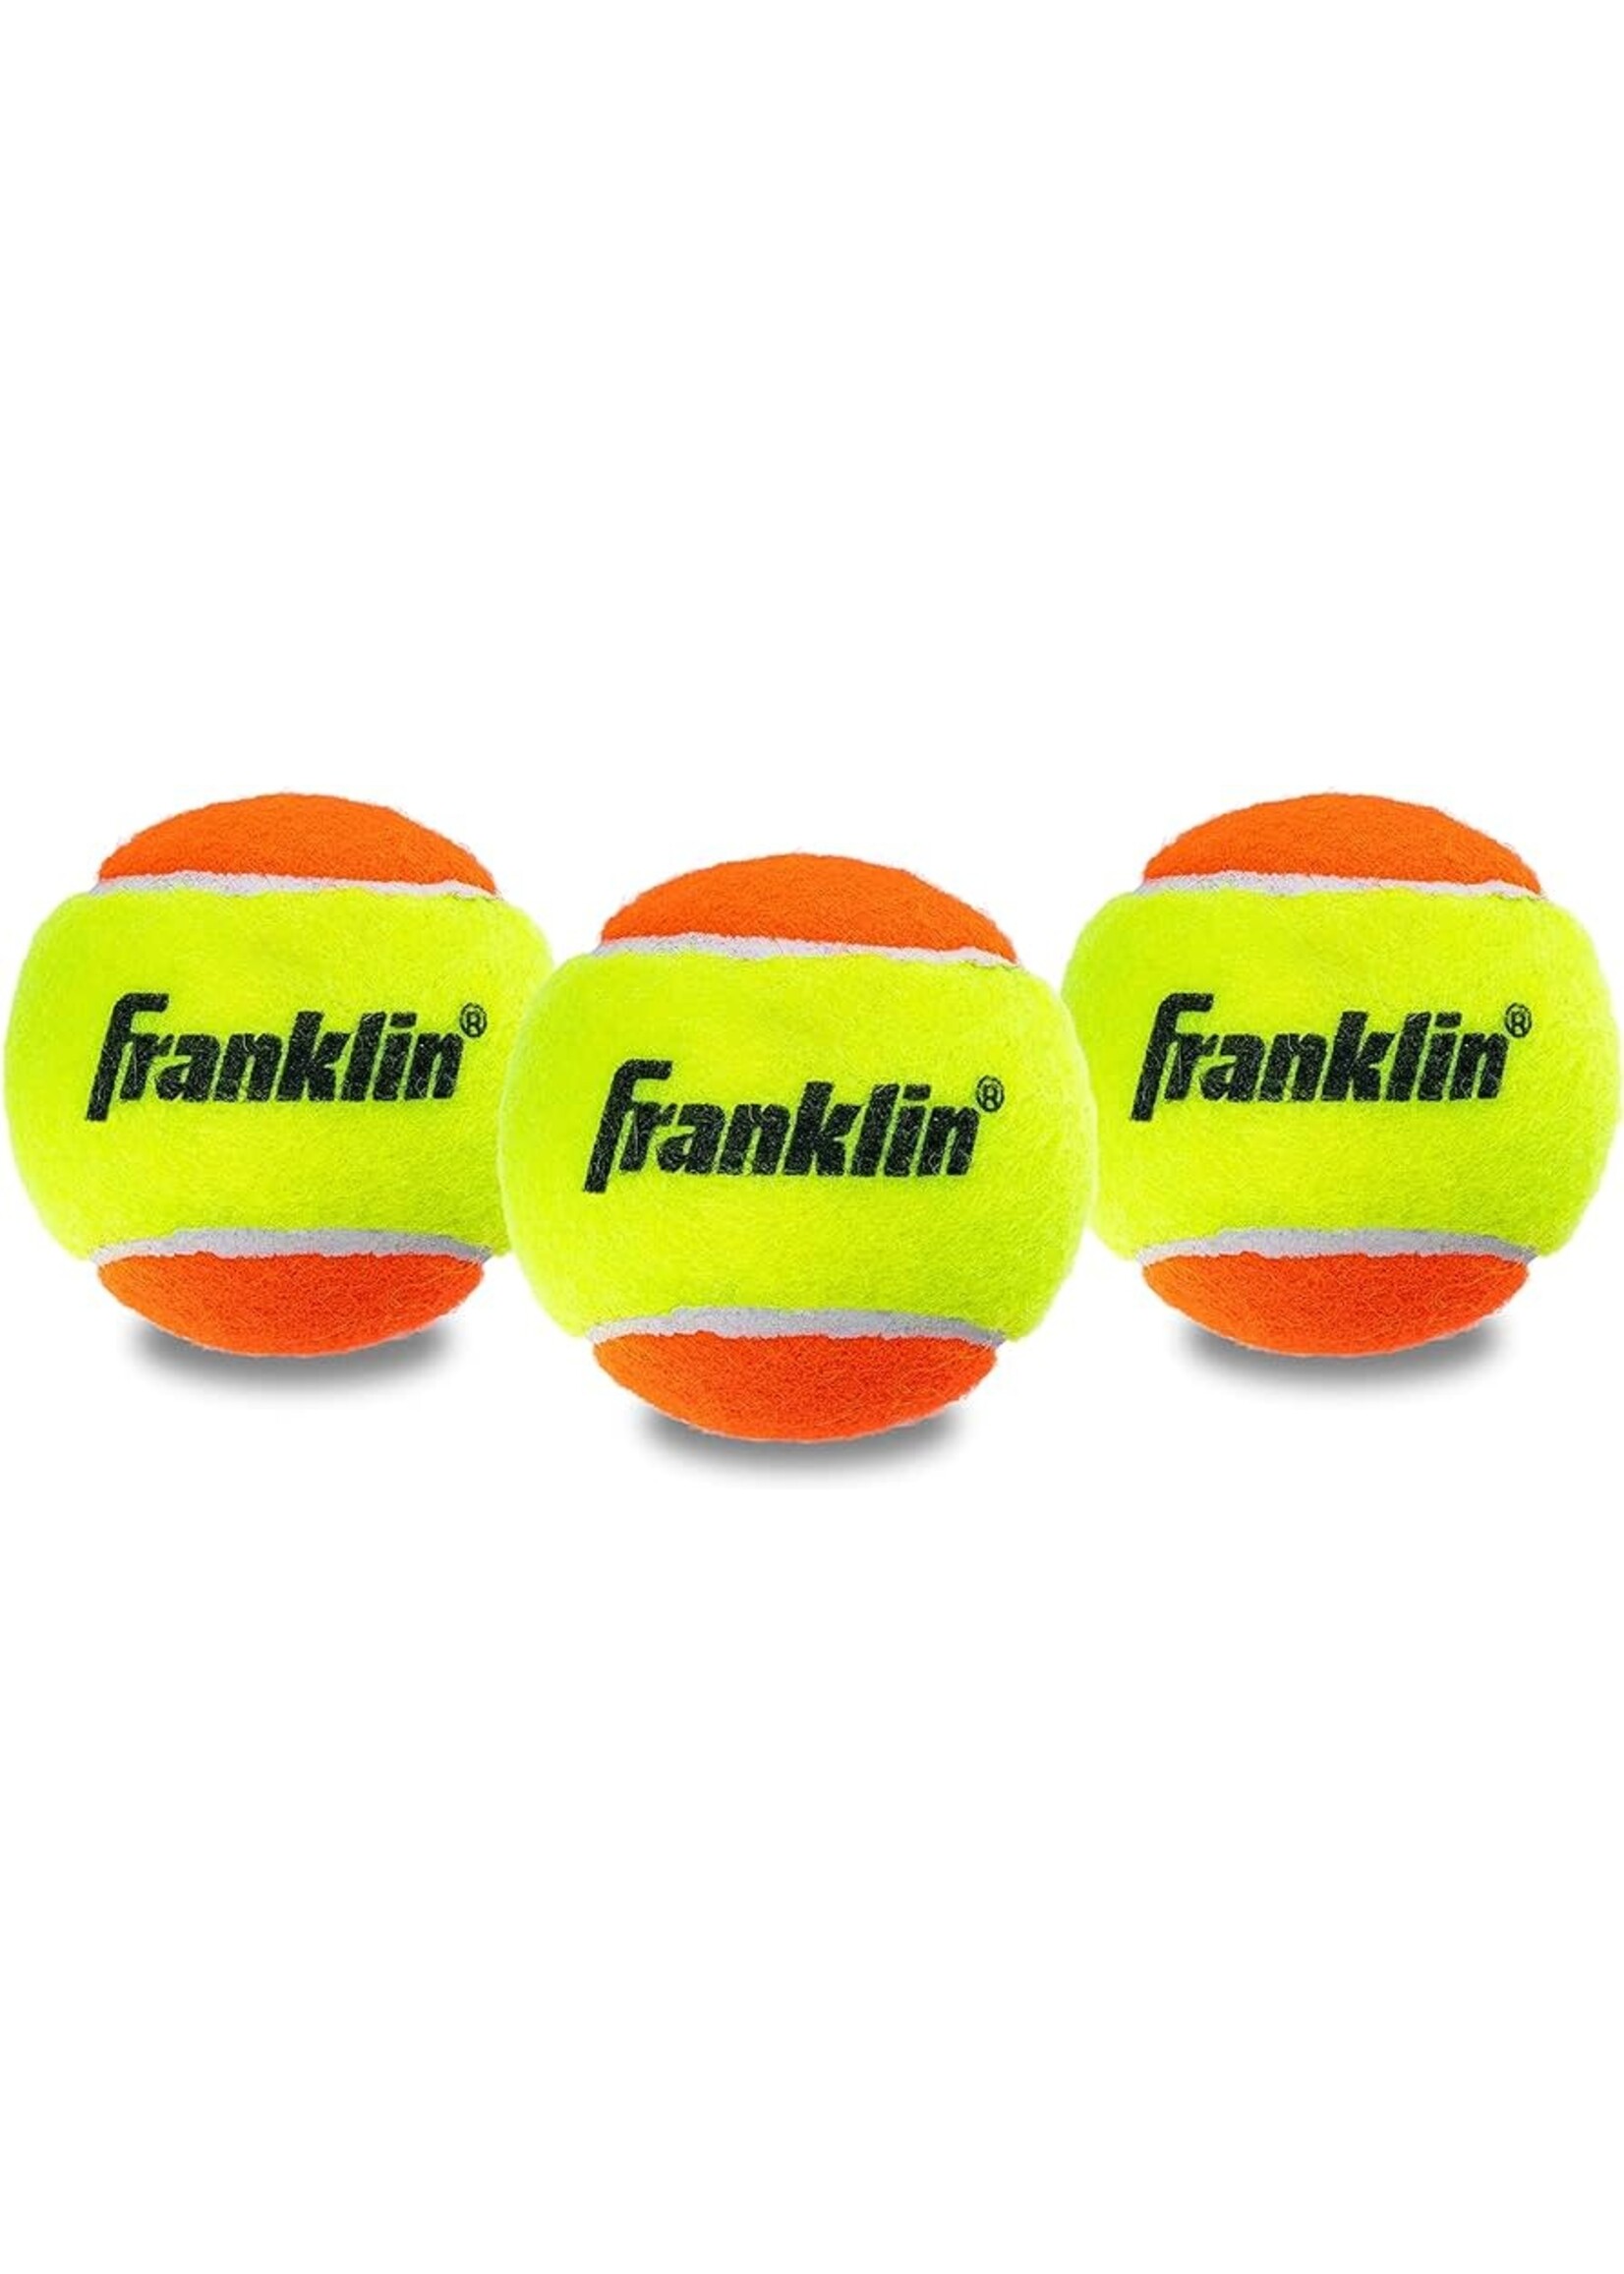 FRANKLIN TENNIS BALL STARTER BEGINNER 3 PACK ORANGE/YELLOW